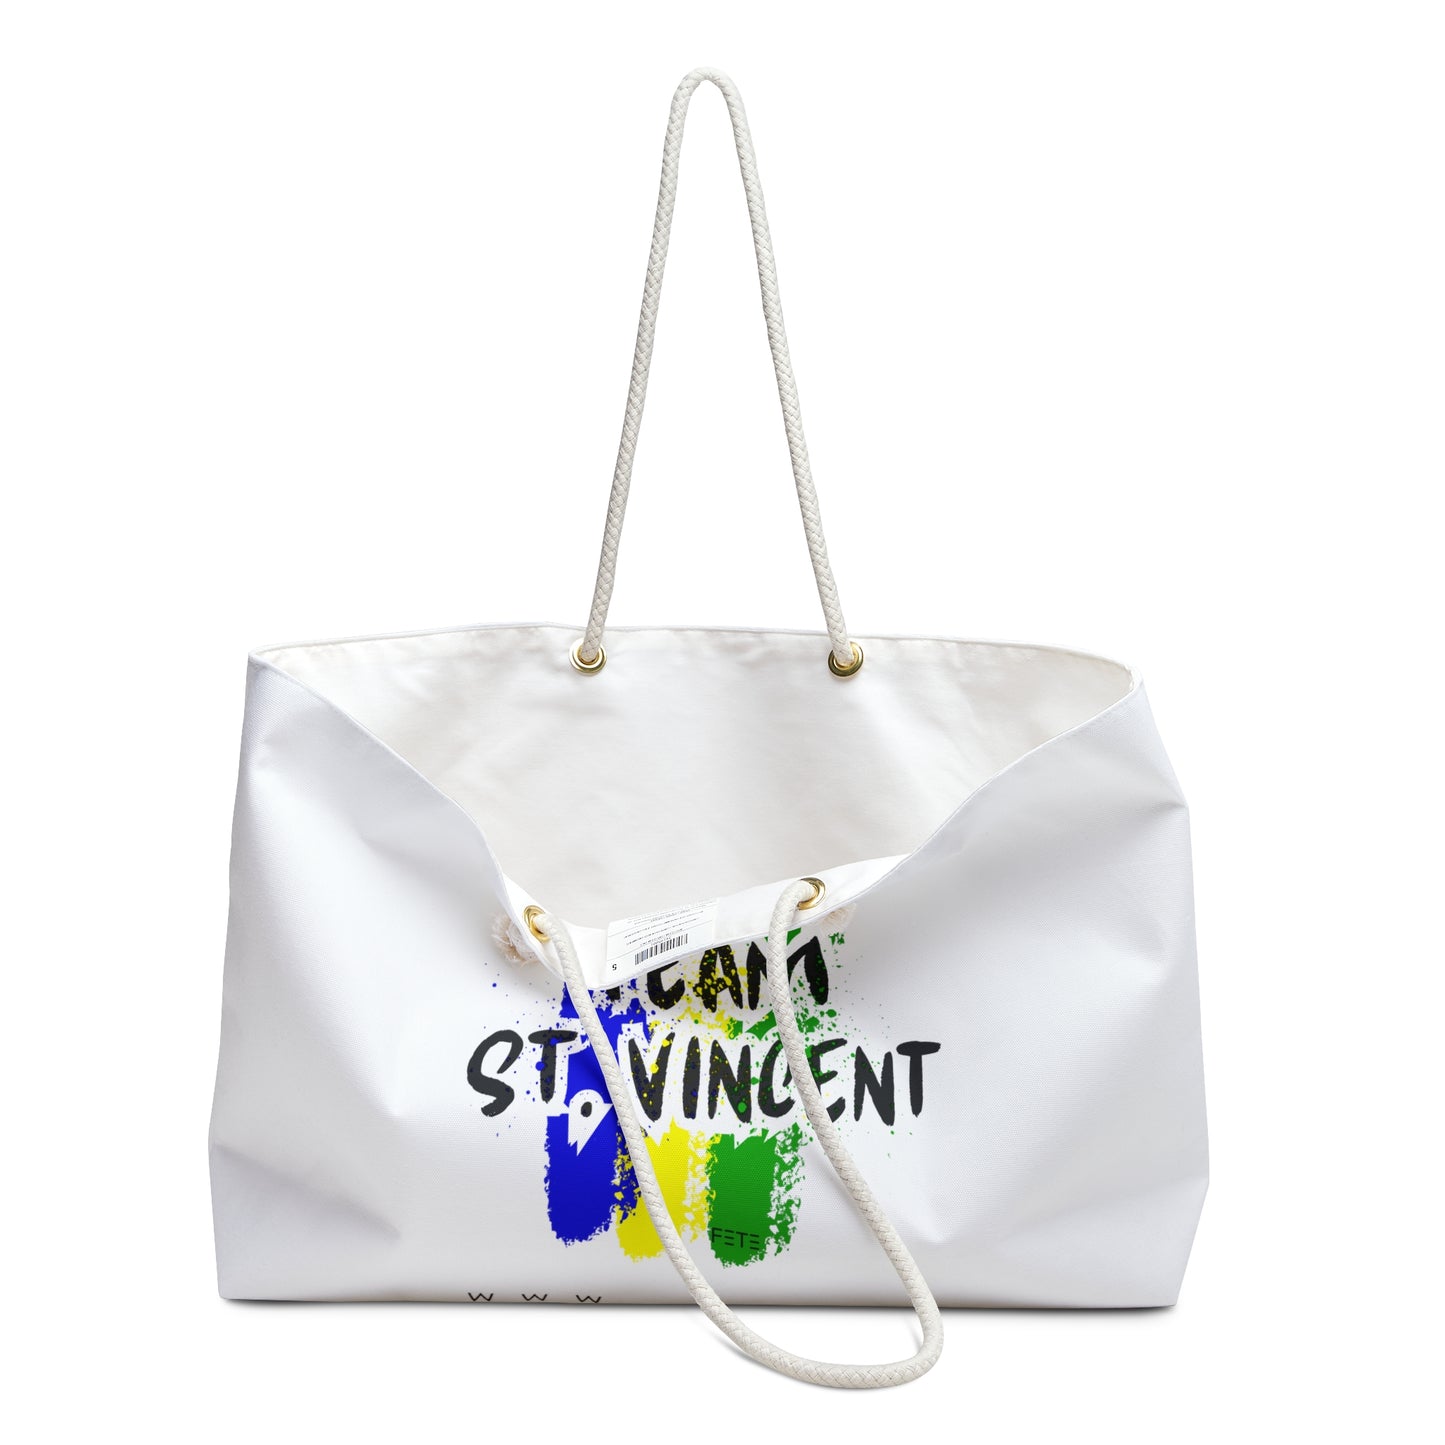 Team St. Vincent Weekender Bag